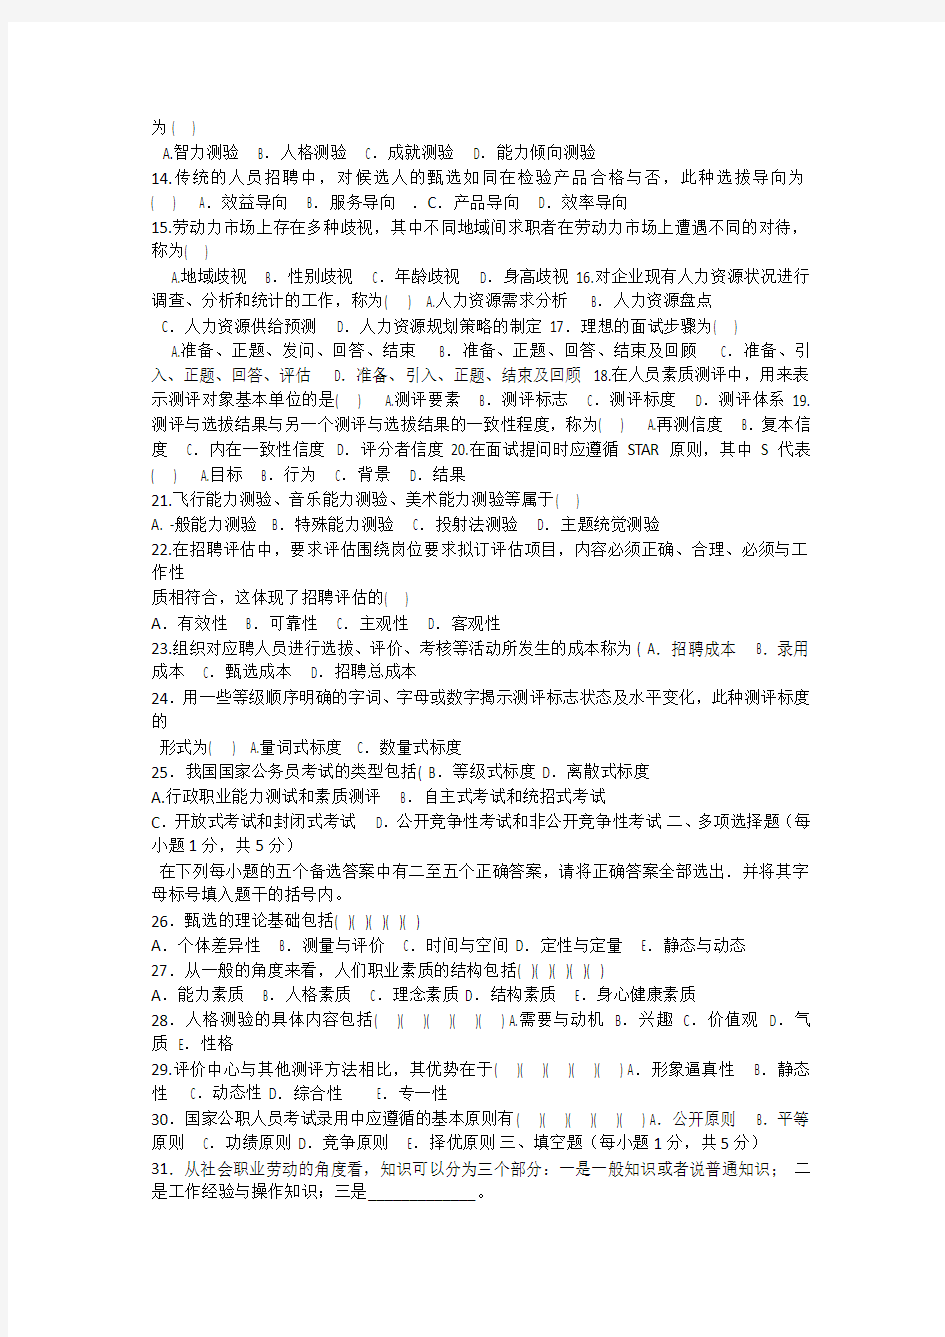 2012年4月江苏省高等教育自学考试05962招聘管理真题